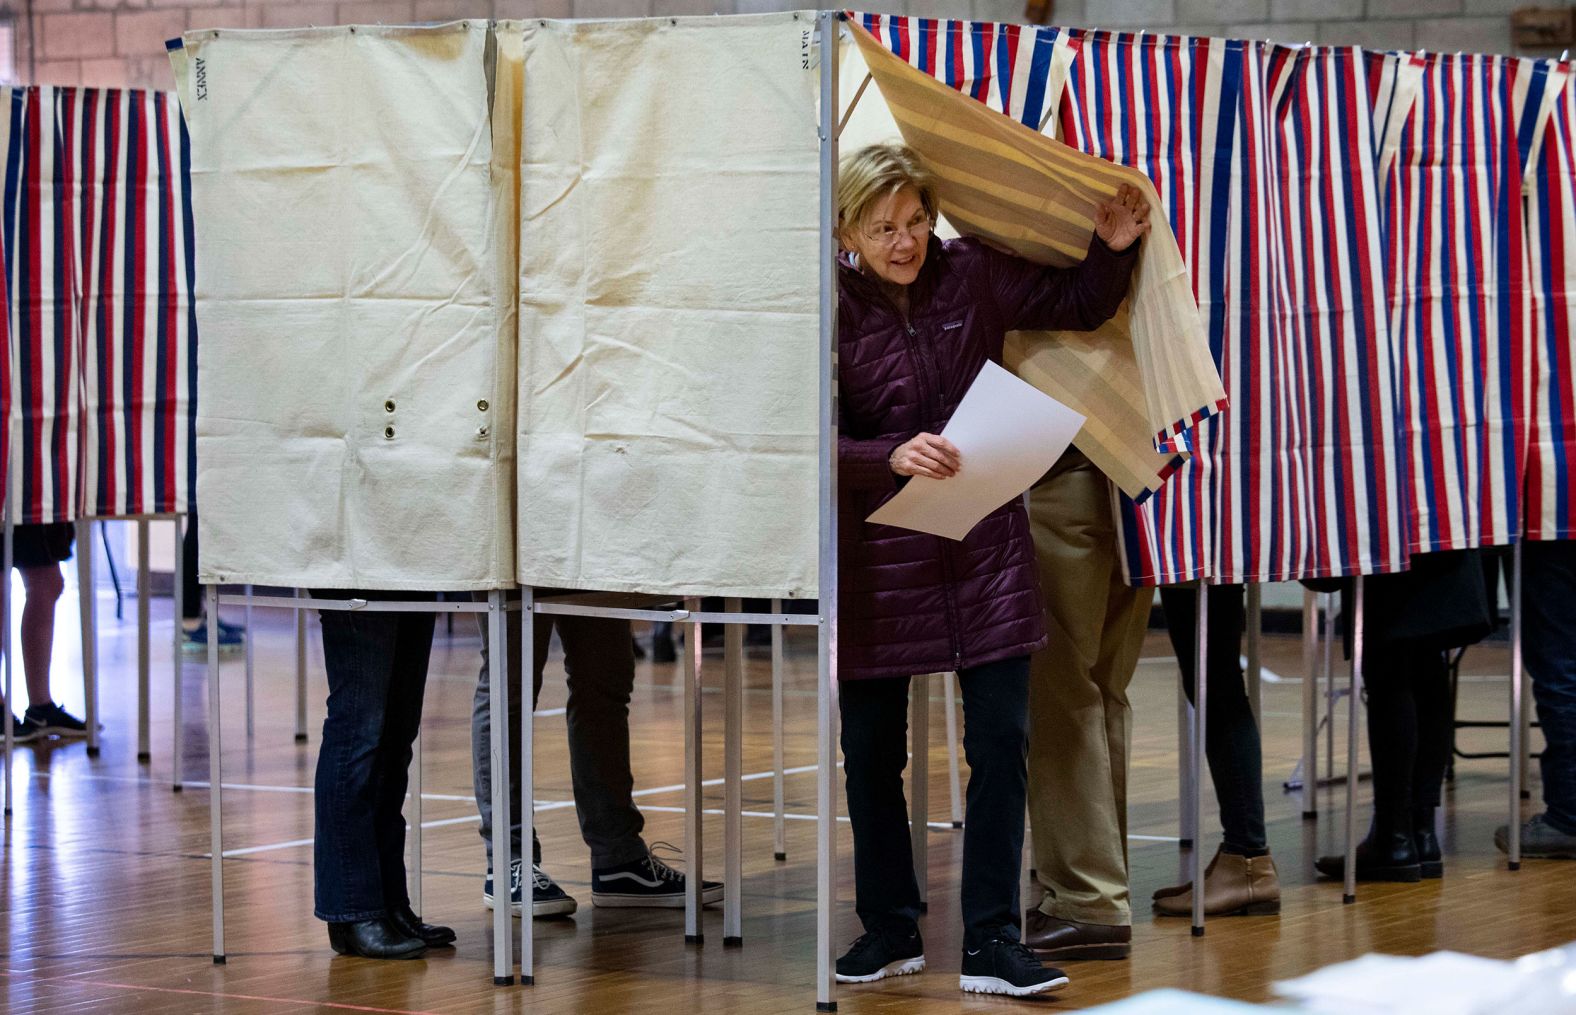 Warren votes in Cambridge, Massachusetts.